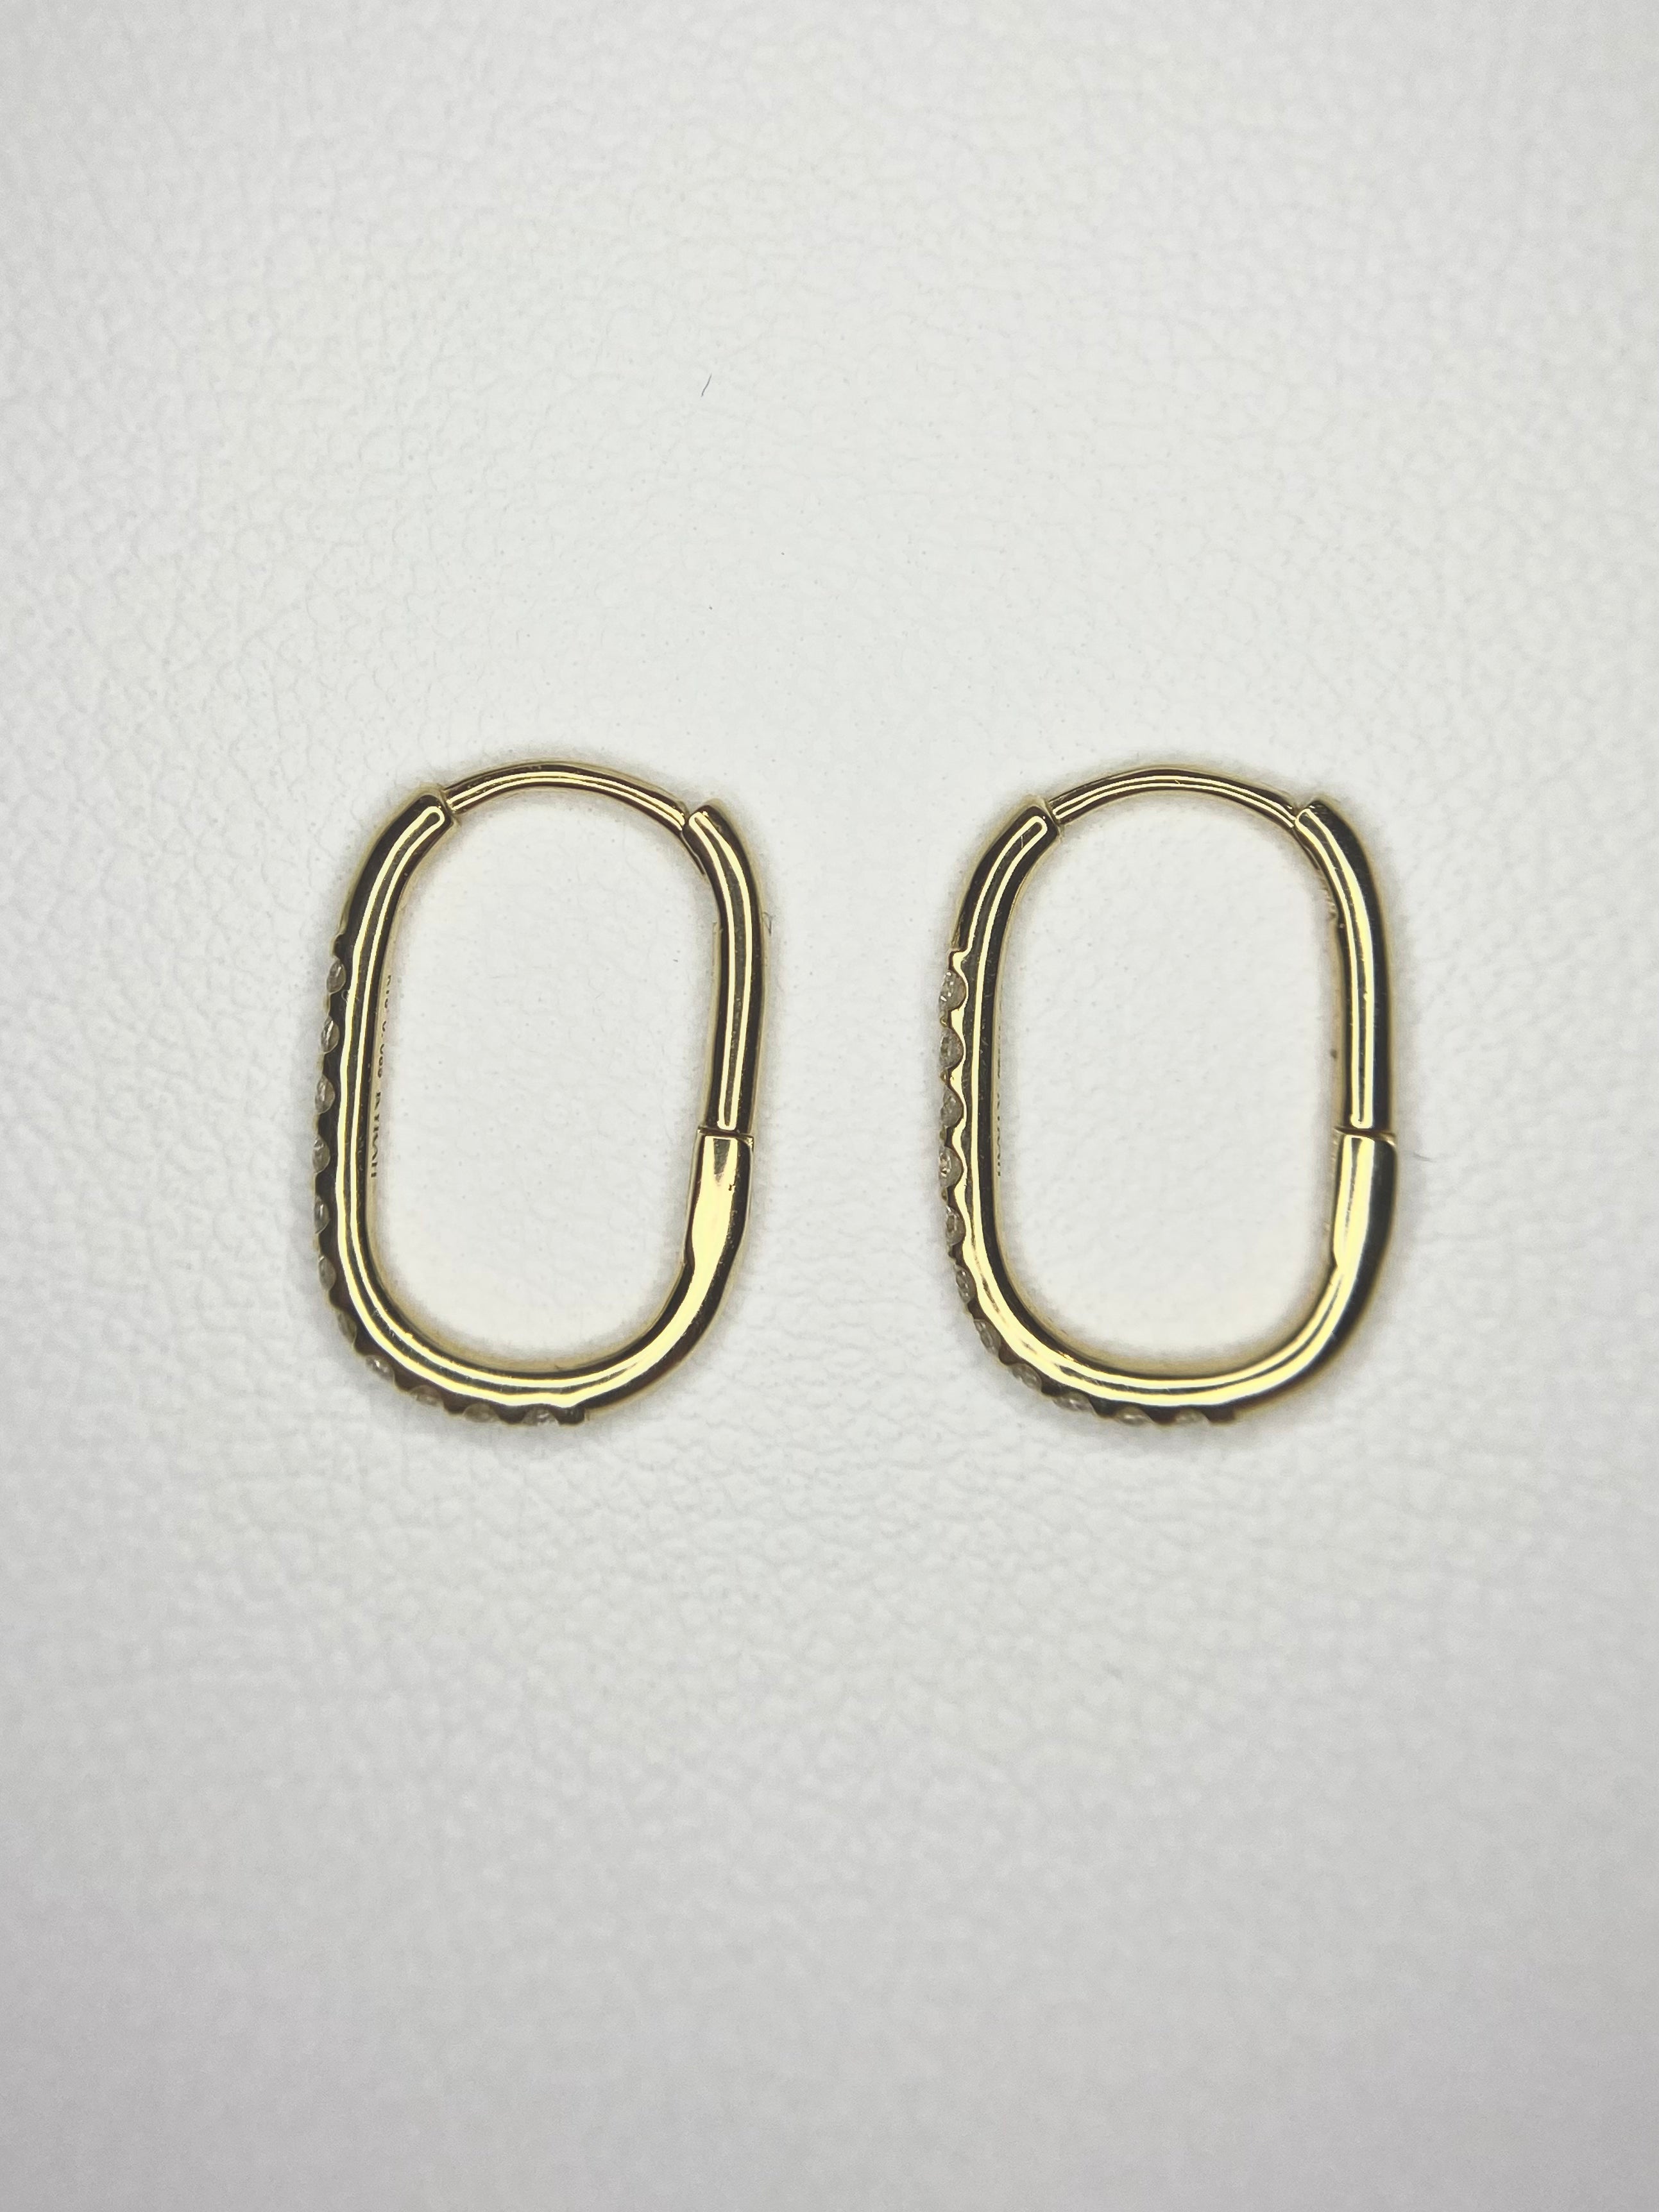 Clip Earrings（クリップピアス）| ラボグロウンダイヤモンド ピアス